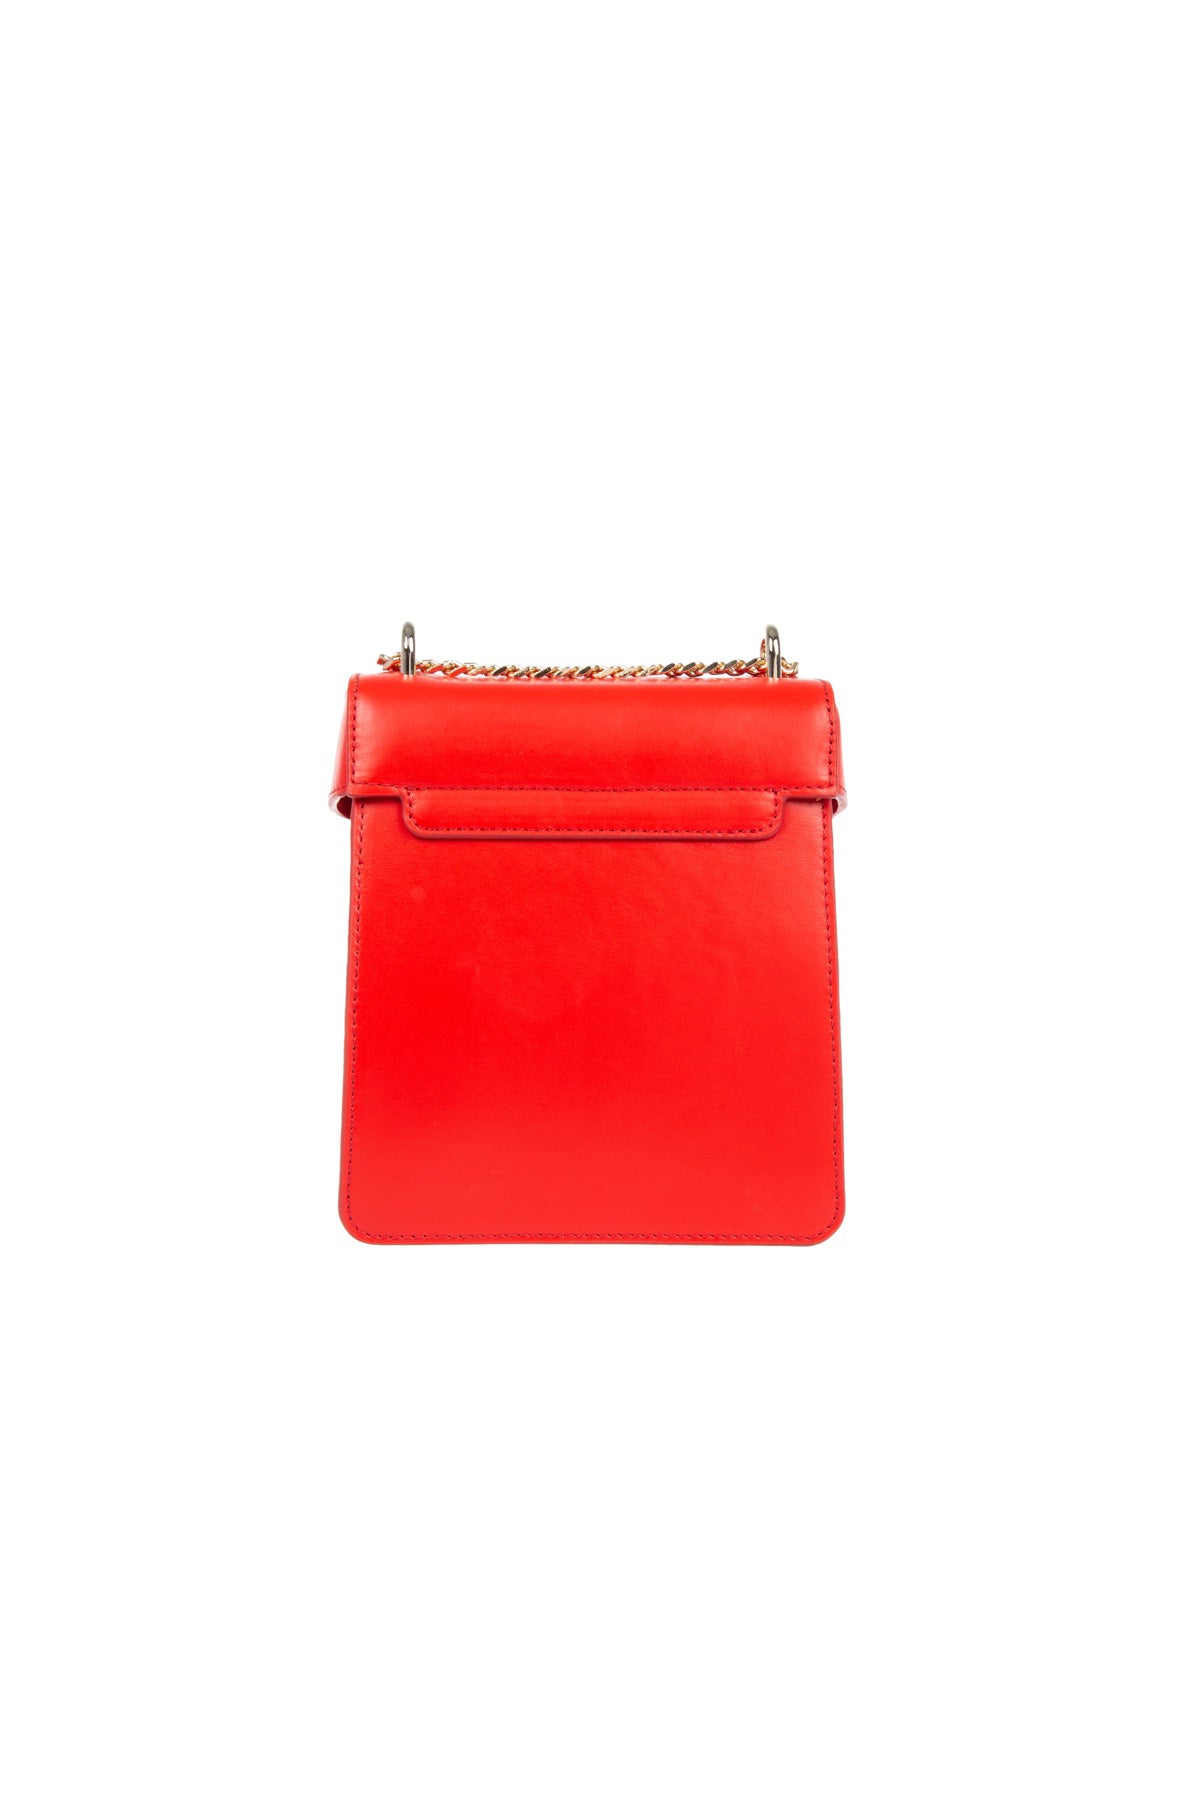 F U R E Y A | Leather Crossbody Bag Red